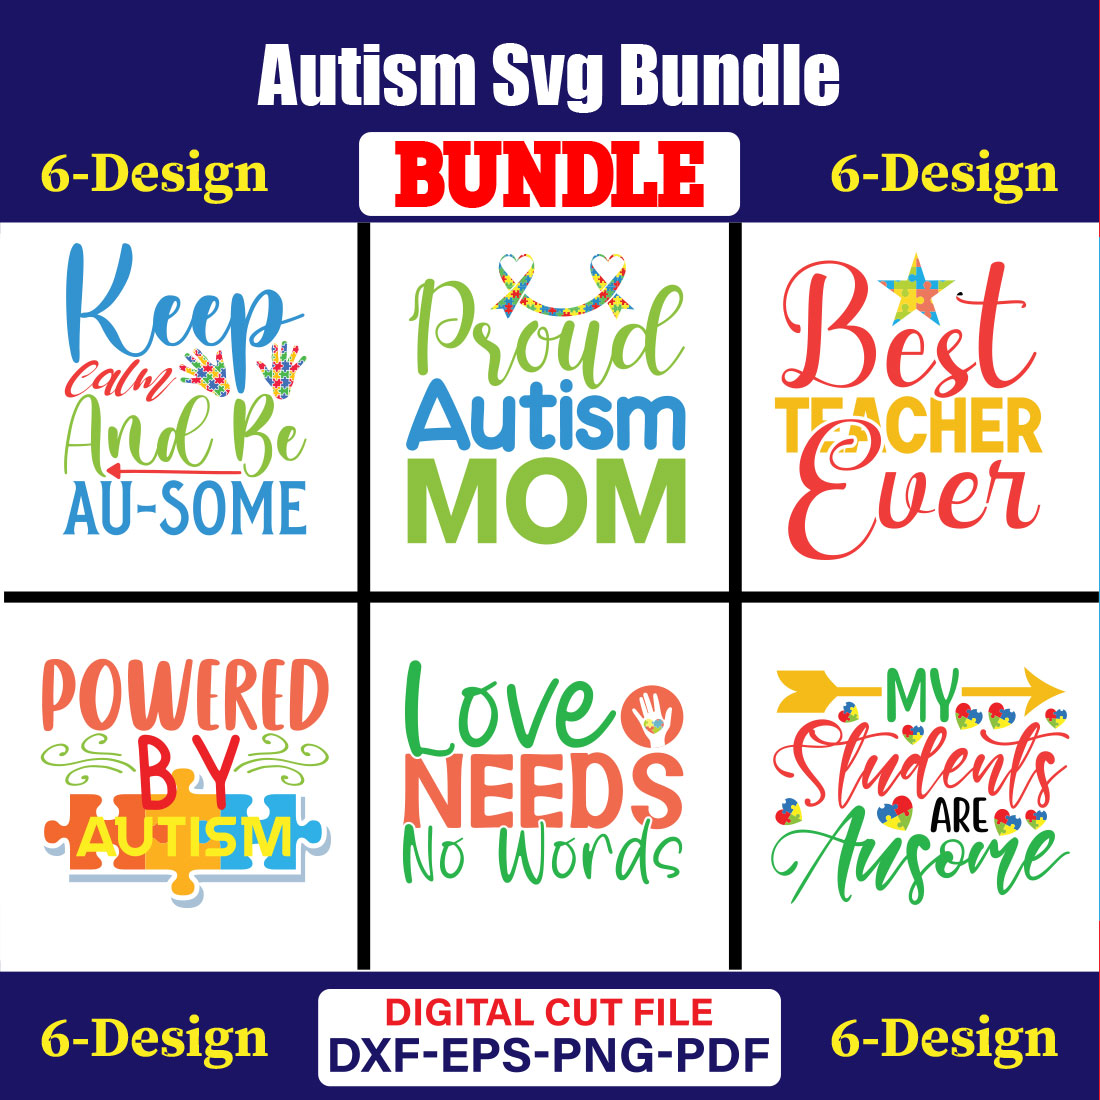 Autism Day T-shirt Design Bundle Vol-07 cover image.